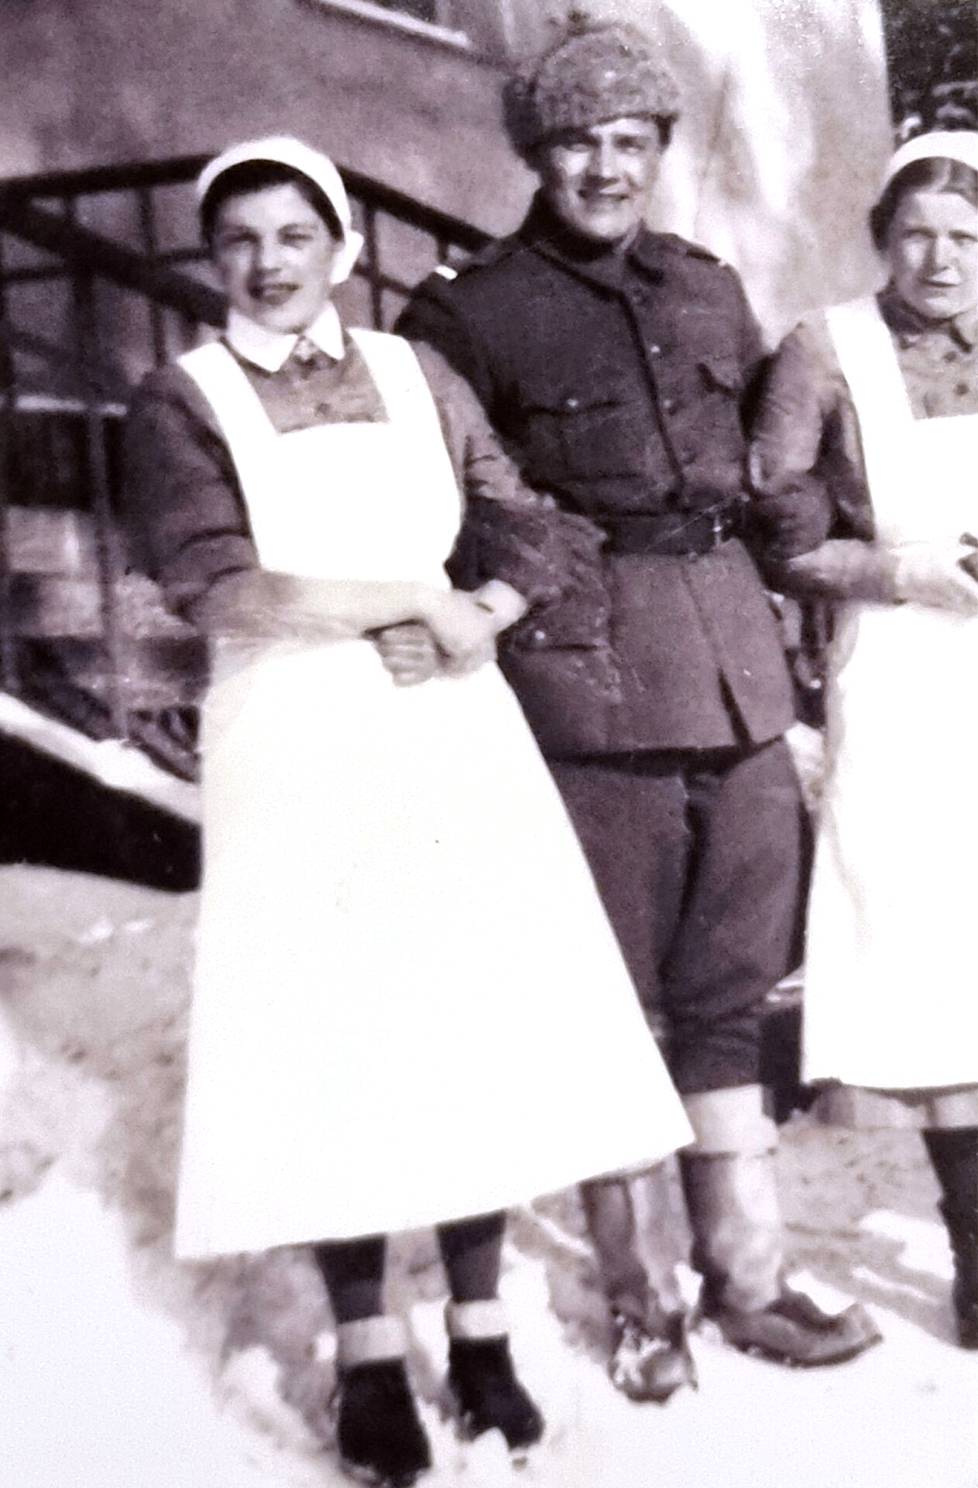 Tämä kuva on otettu Esteristä (vas.) Suistamon pitäjässä Loimolan piirissä talvella 1943. Hän oli rintamalottana ja hoiti terveydenhoitajan tehtäviä. 